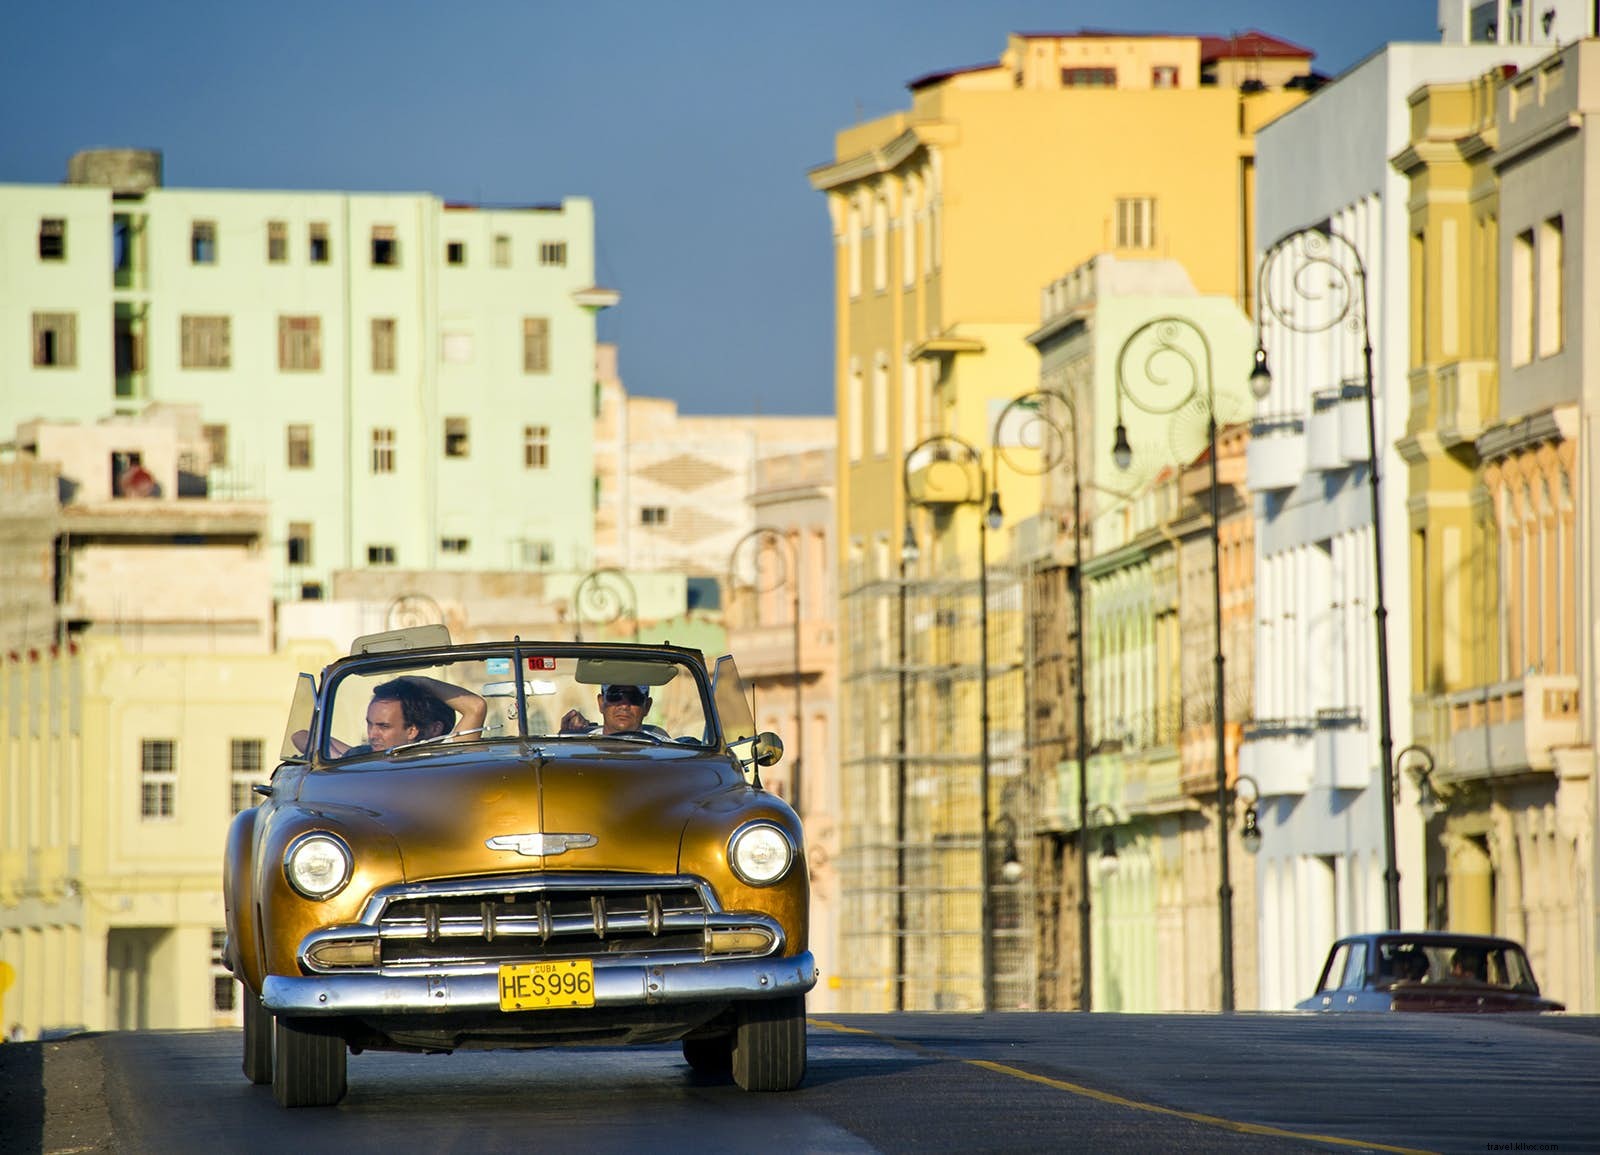 Viajes Estados Unidos-Cuba:lo que necesita saber sobre las nuevas políticas de Trump 